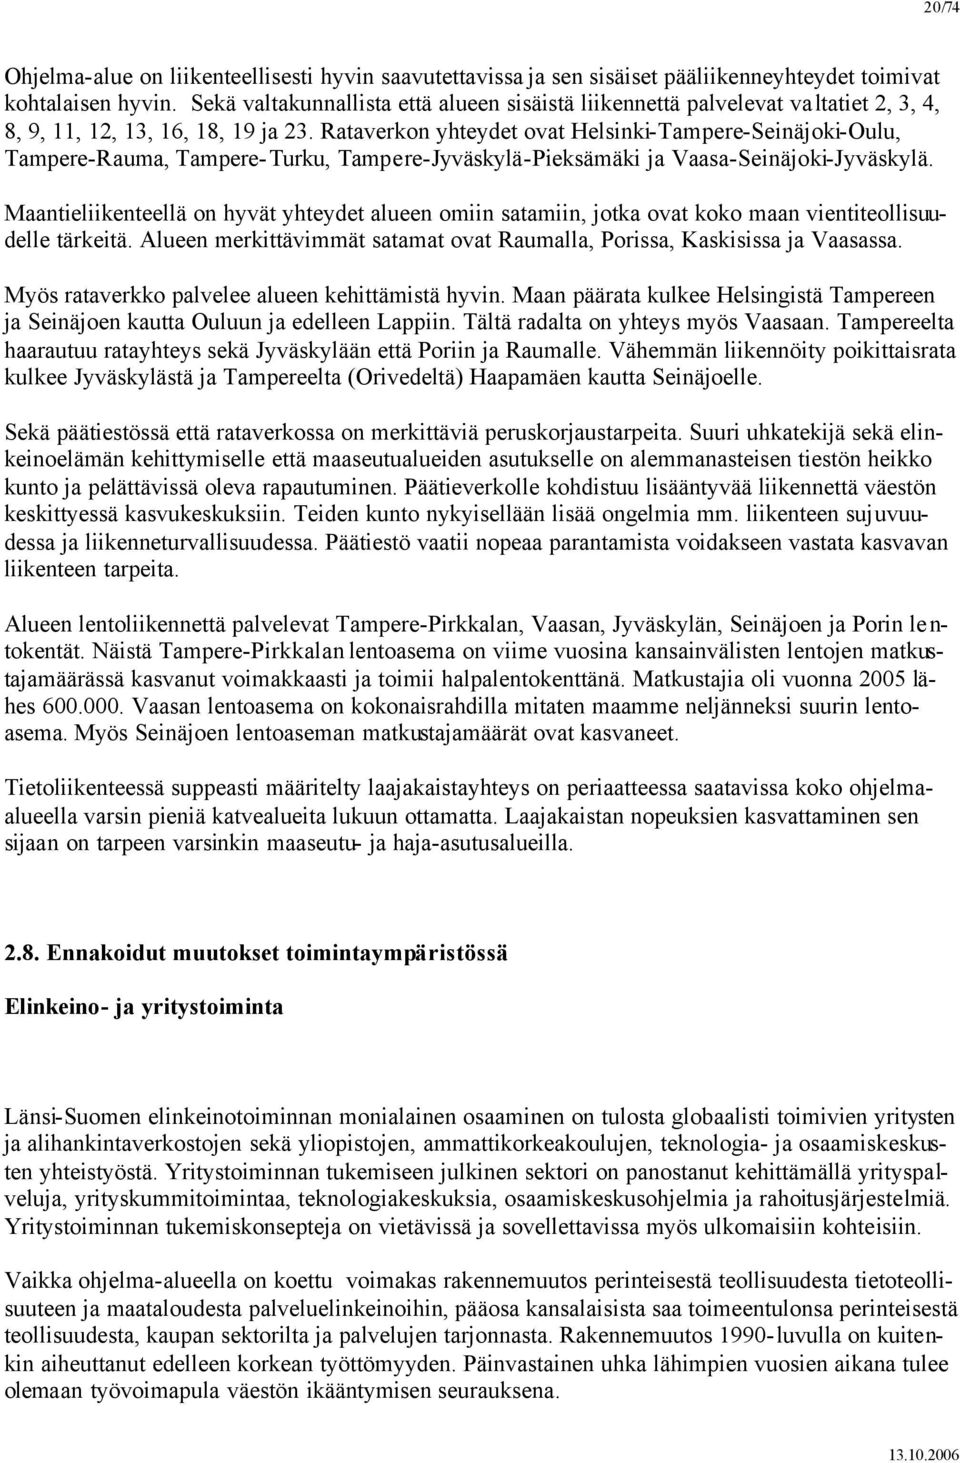 Rataverkon yhteydet ovat Helsinki-Tampere-Seinäjoki-Oulu, Tampere-Rauma, Tampere-Turku, Tampere-Jyväskylä-Pieksämäki ja Vaasa-Seinäjoki-Jyväskylä.